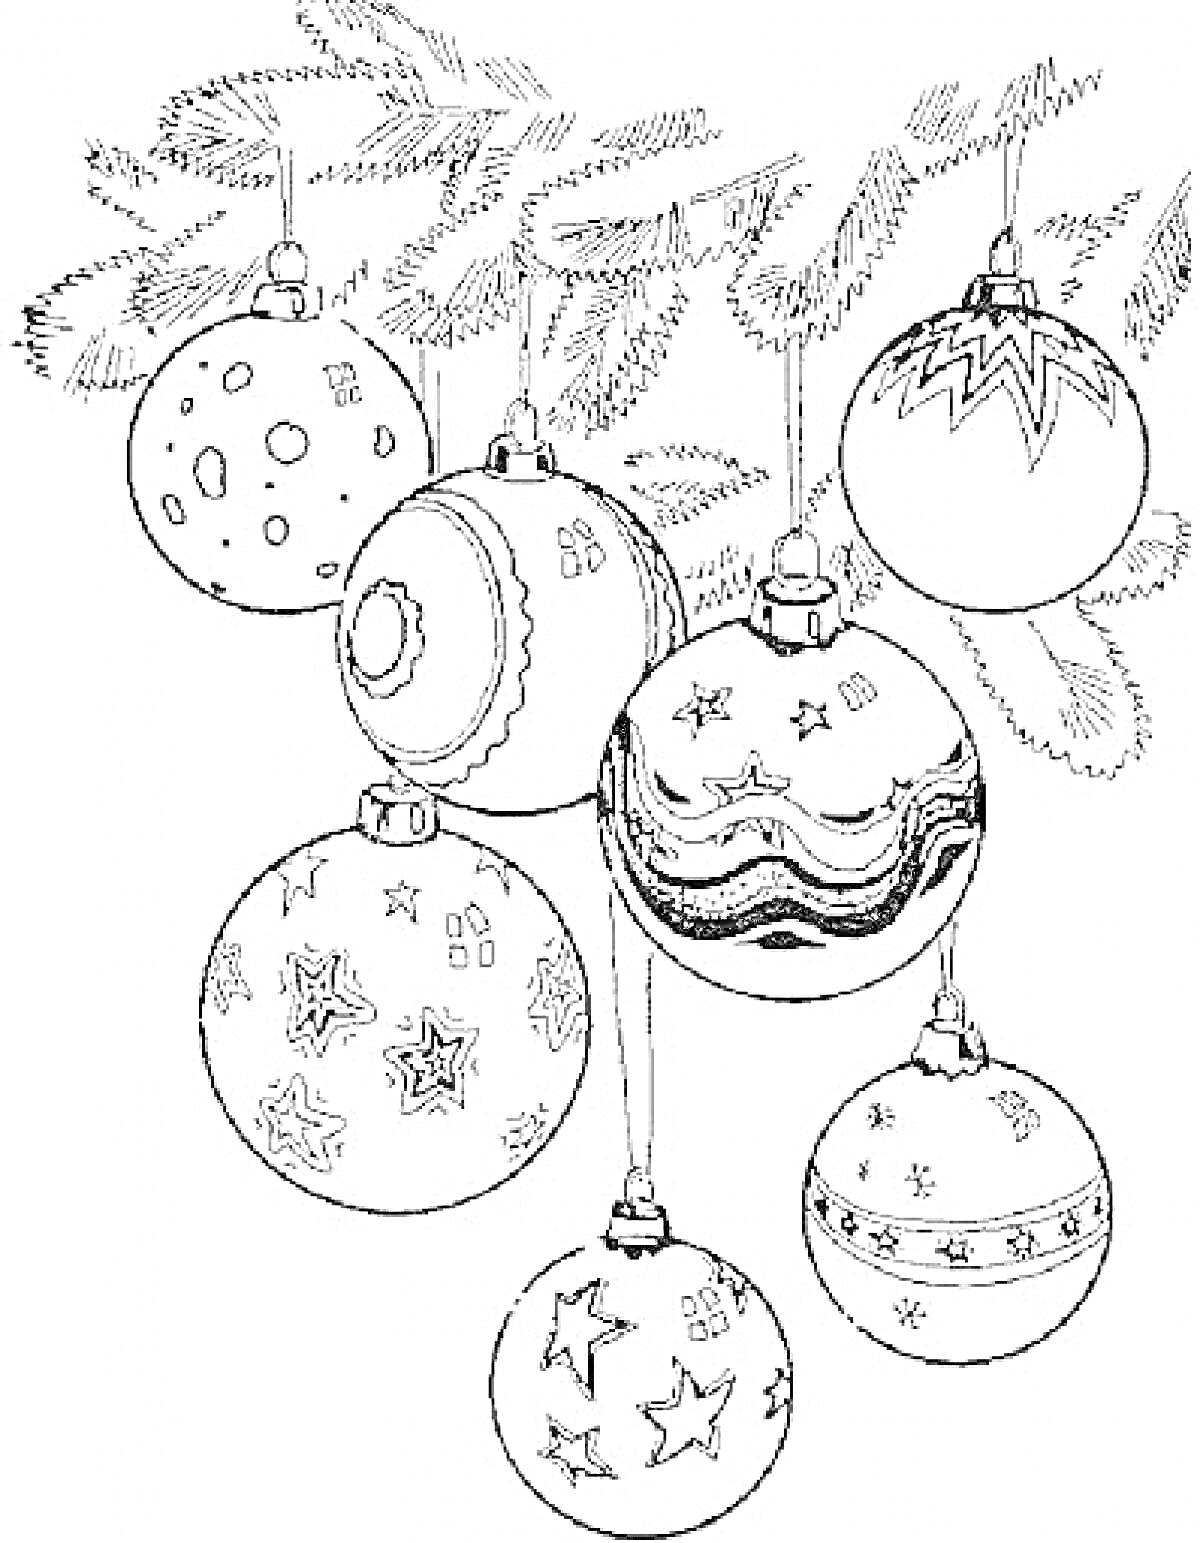 Новогодние шары на ёлочных ветках с различными узорами - звезды, полосы, точки, зигзаги